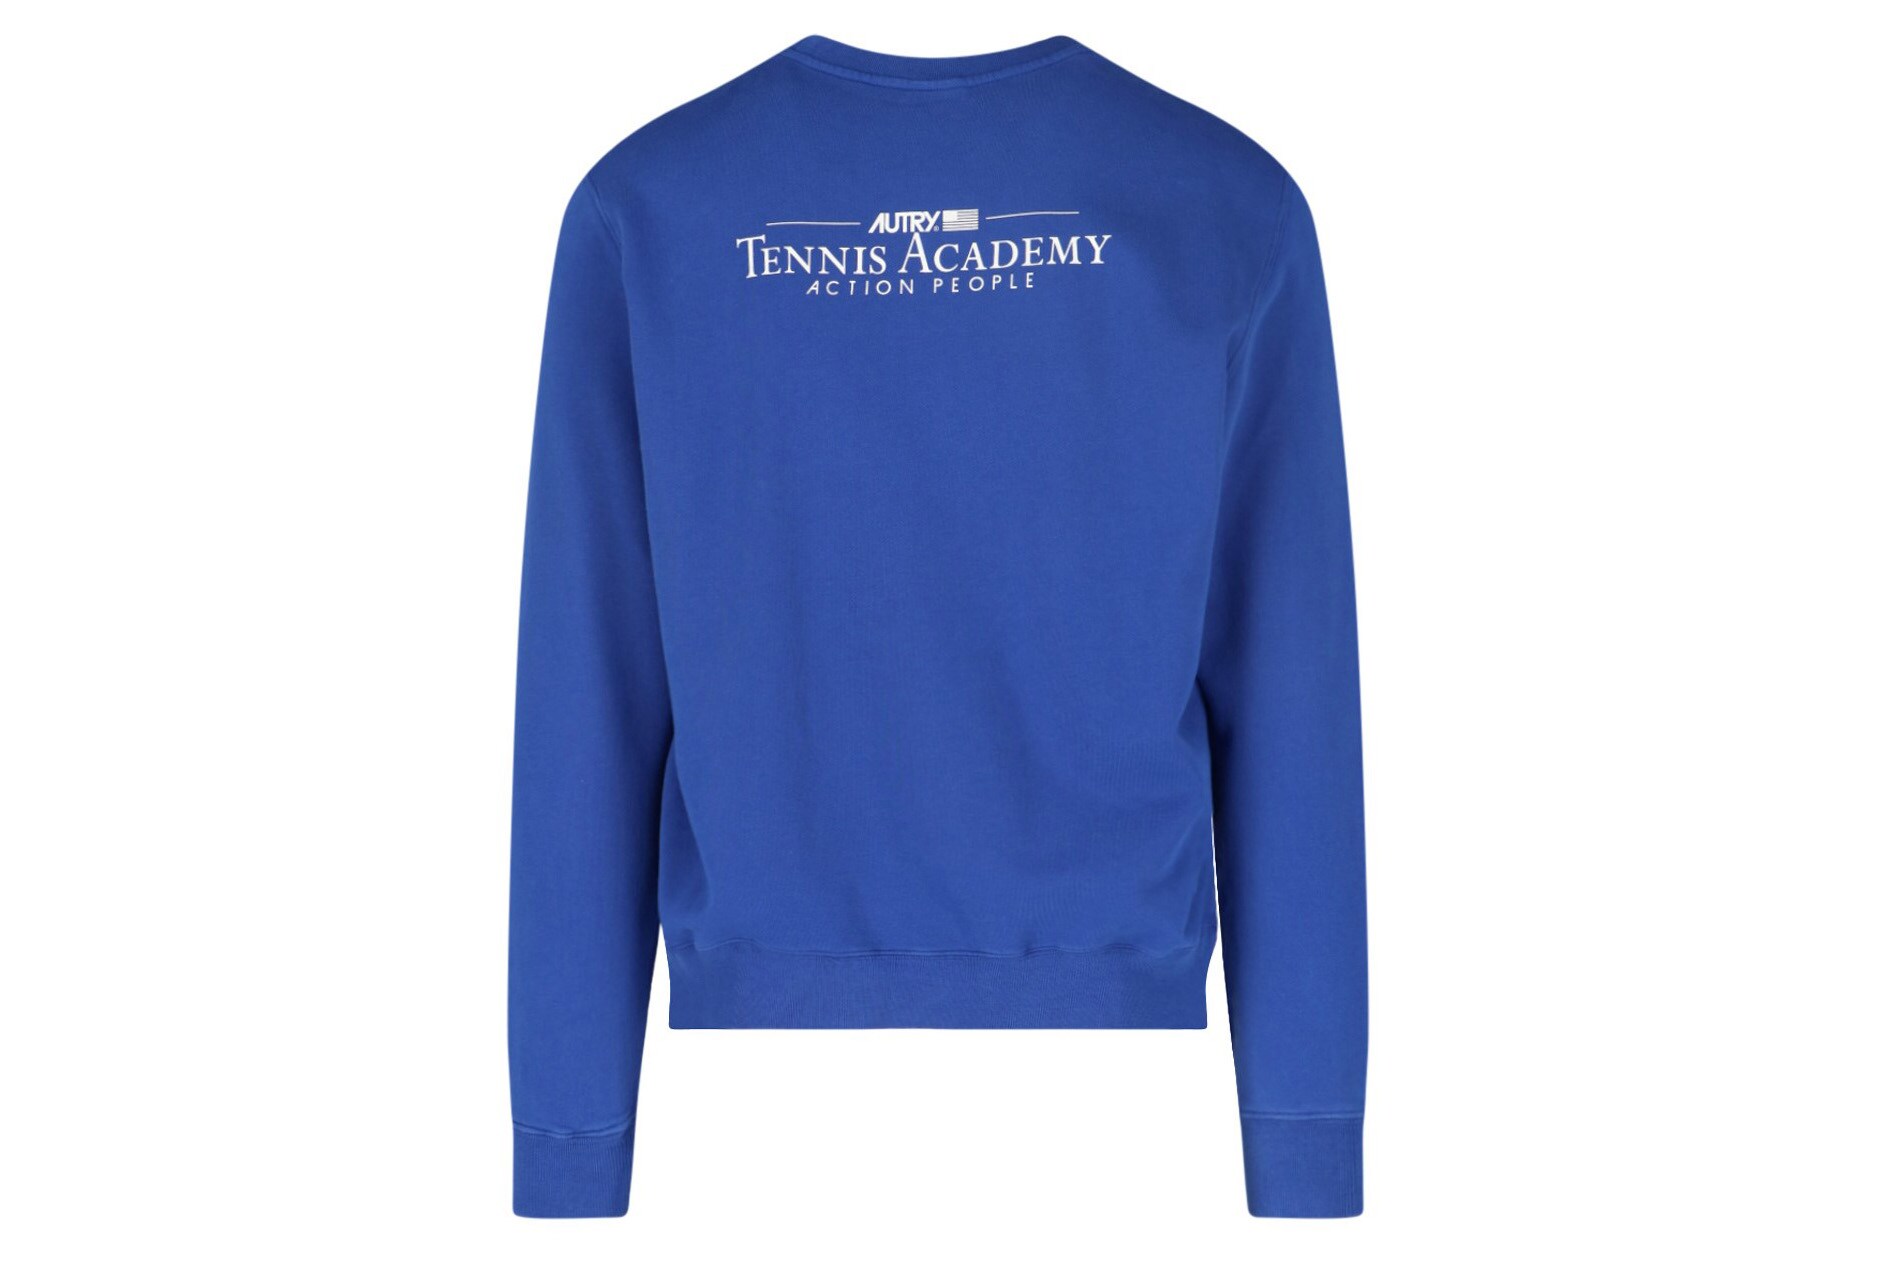 Autry. Girocollo in cotone blu cyano, con scritta Tennis Academy sulla schiena, finiture a costine.